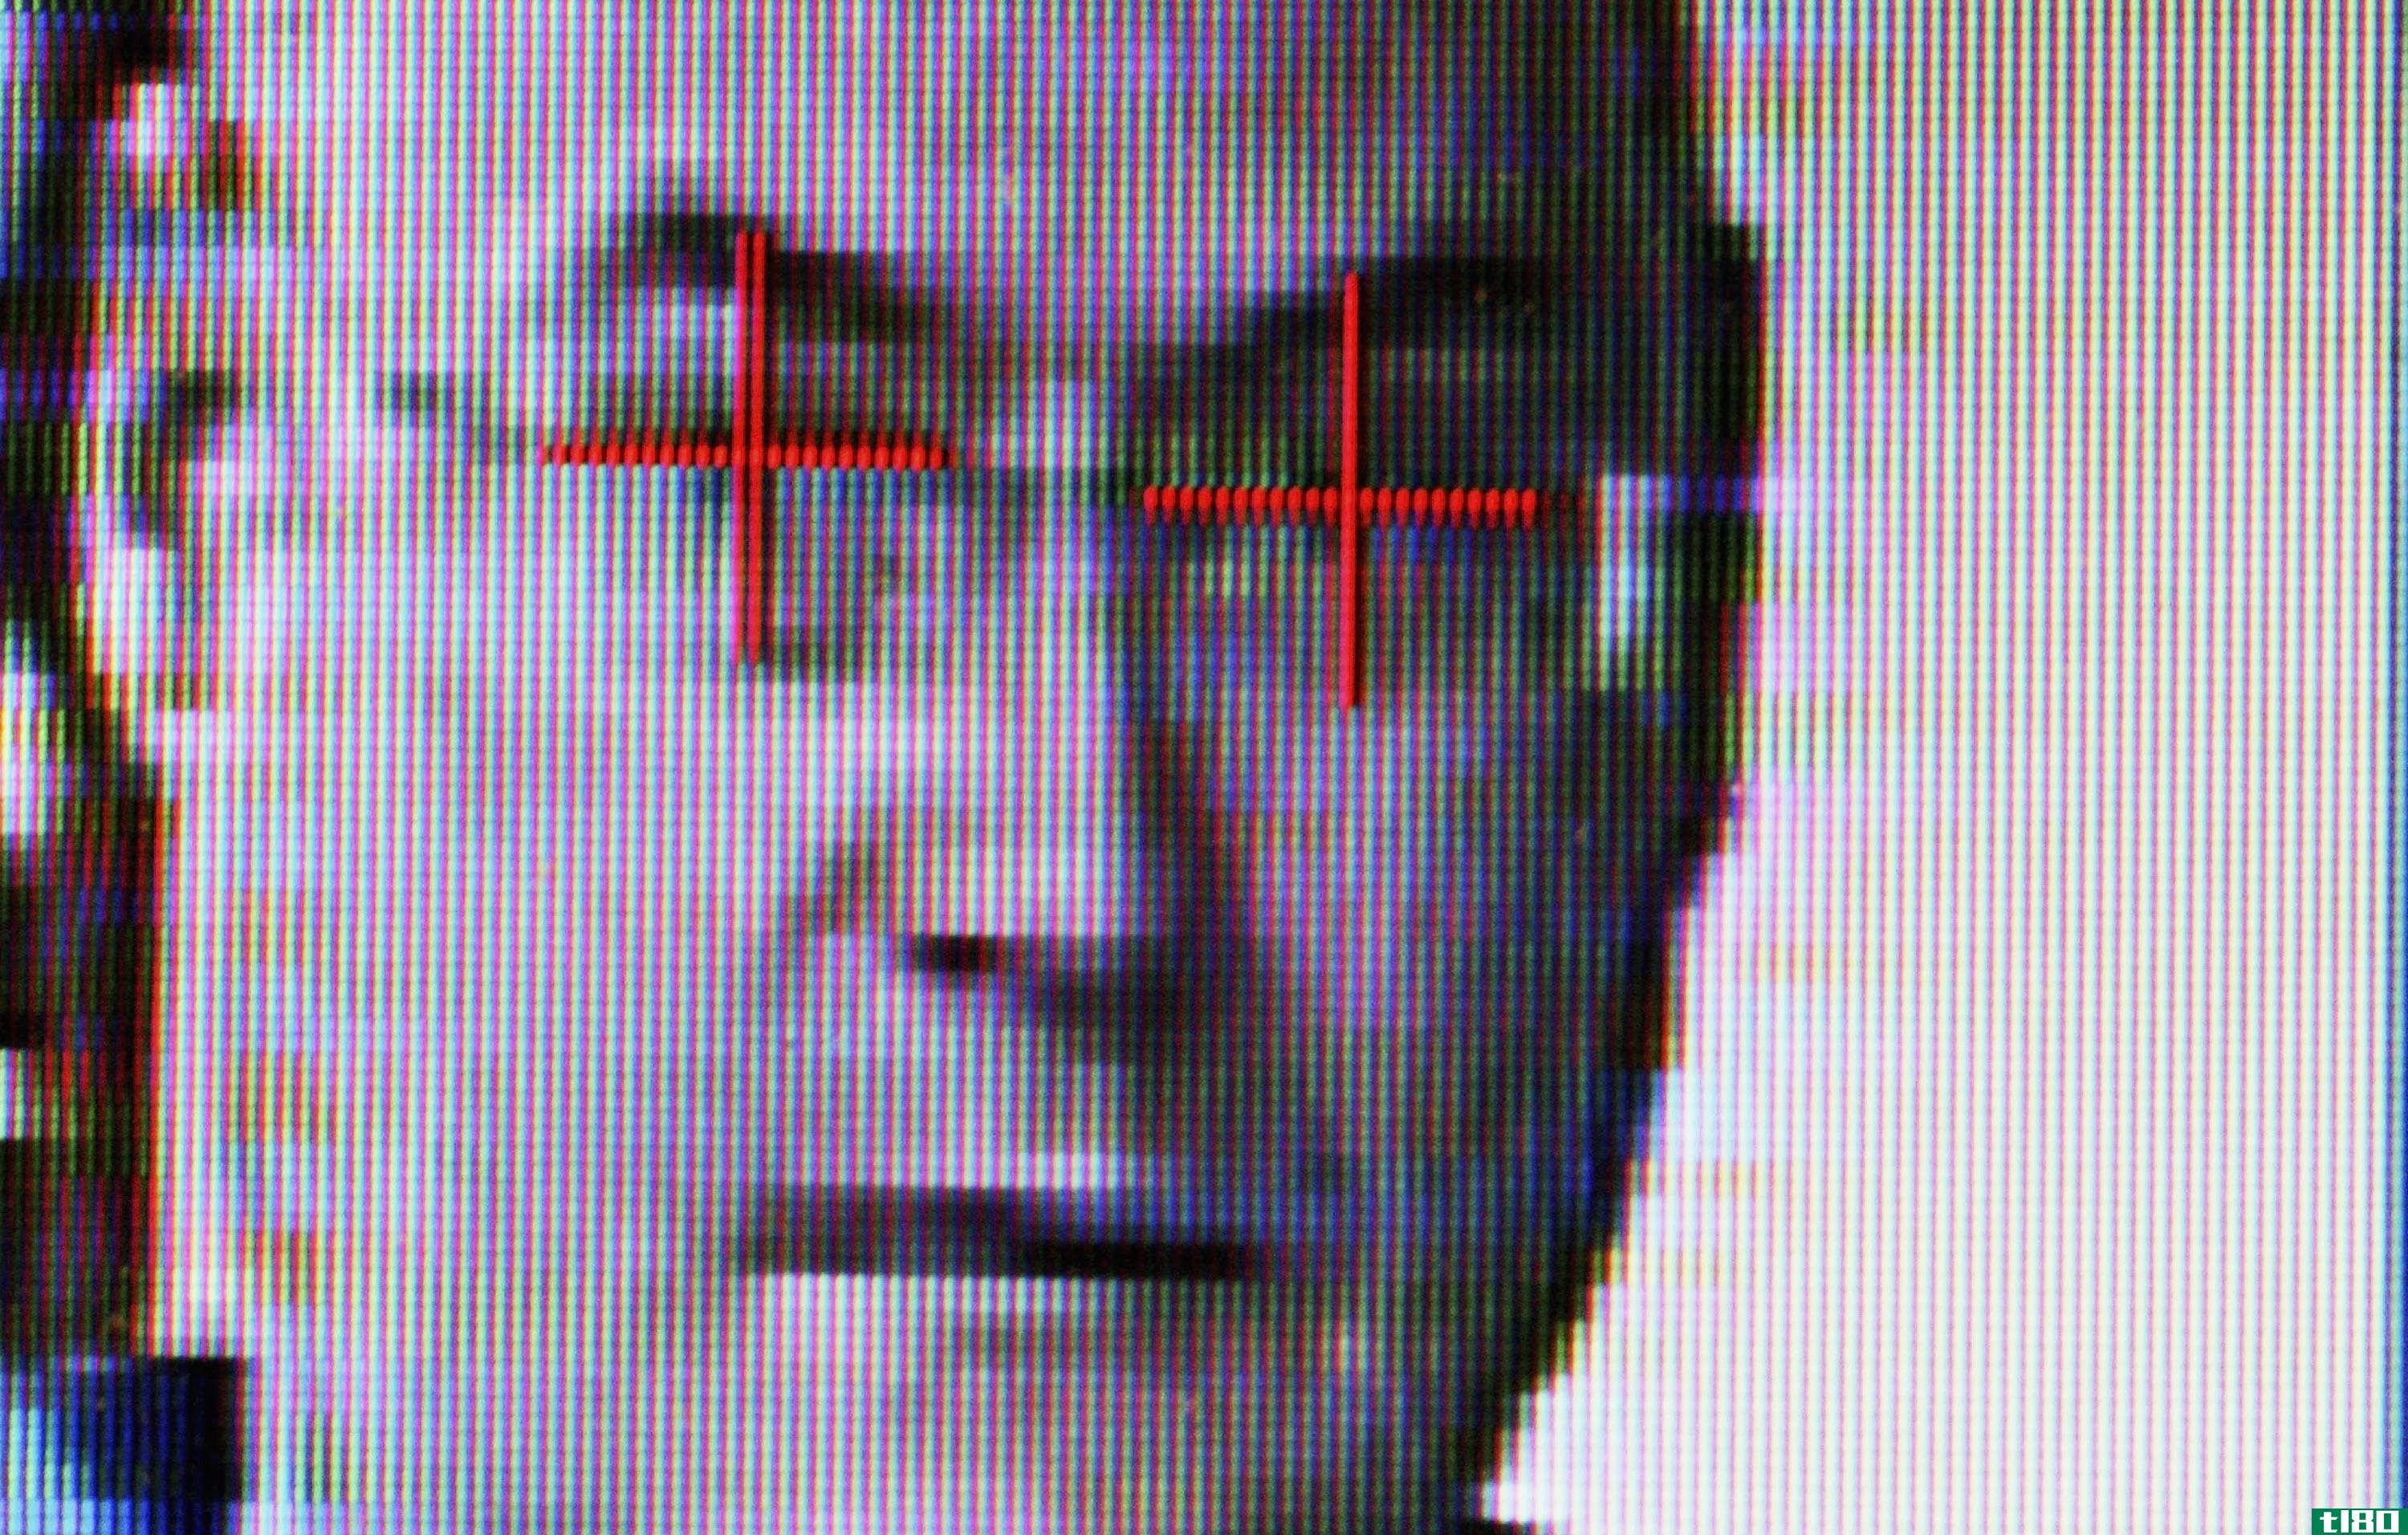 美国联邦调查局（fbi）的面部识别系统可以利用超过4.11亿张照片